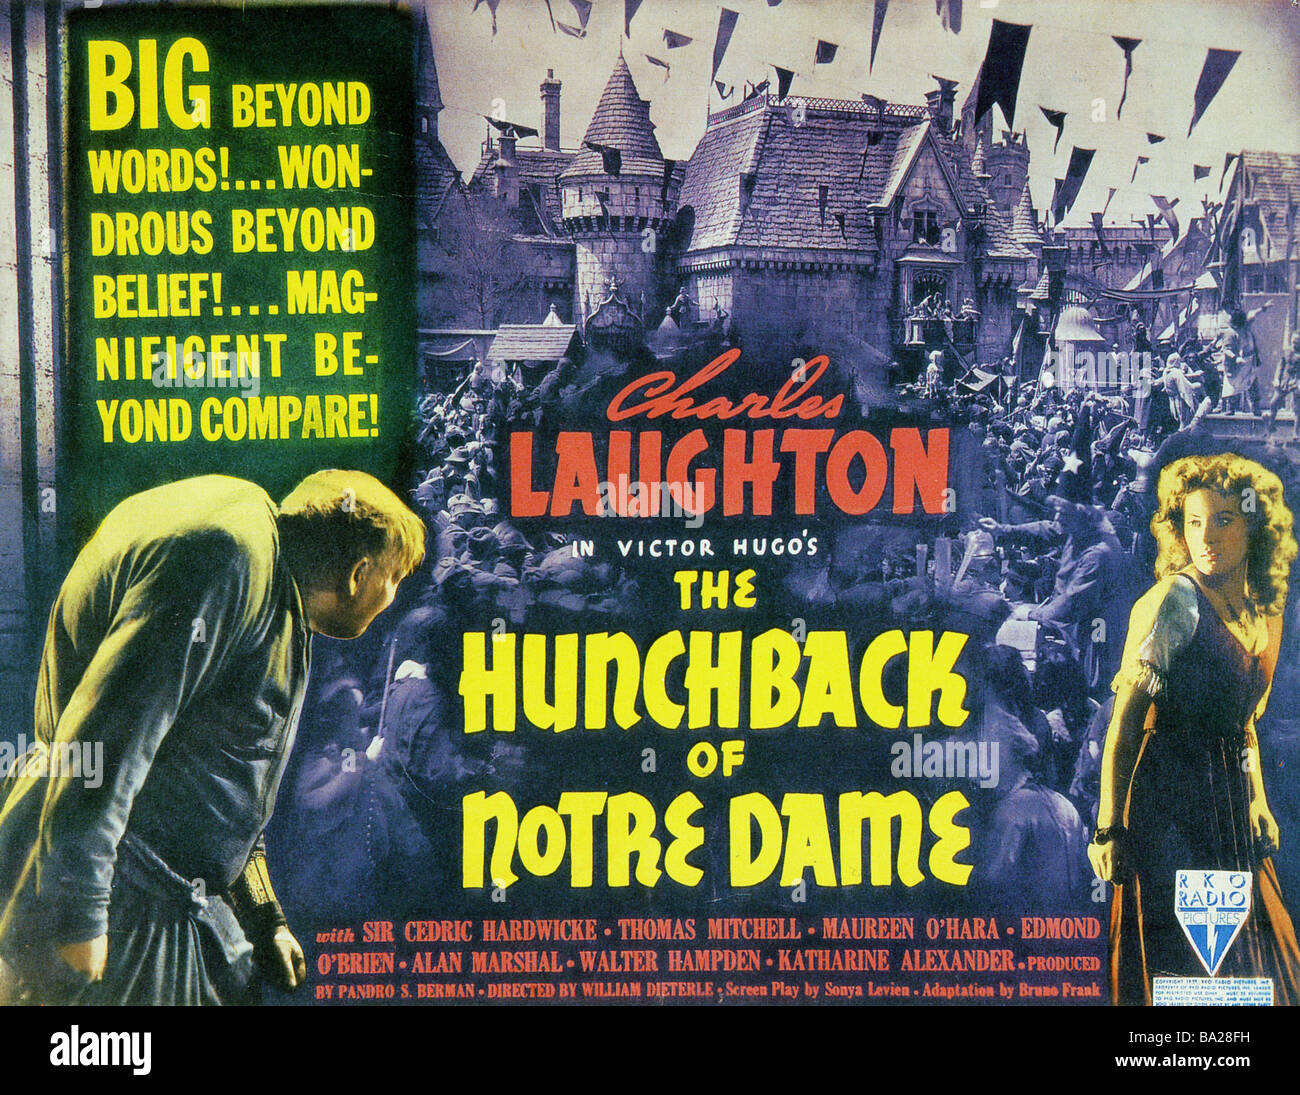 El jorobado de Notre Dame Cartel para 1939 RKO film con Charles Laughton Foto de stock